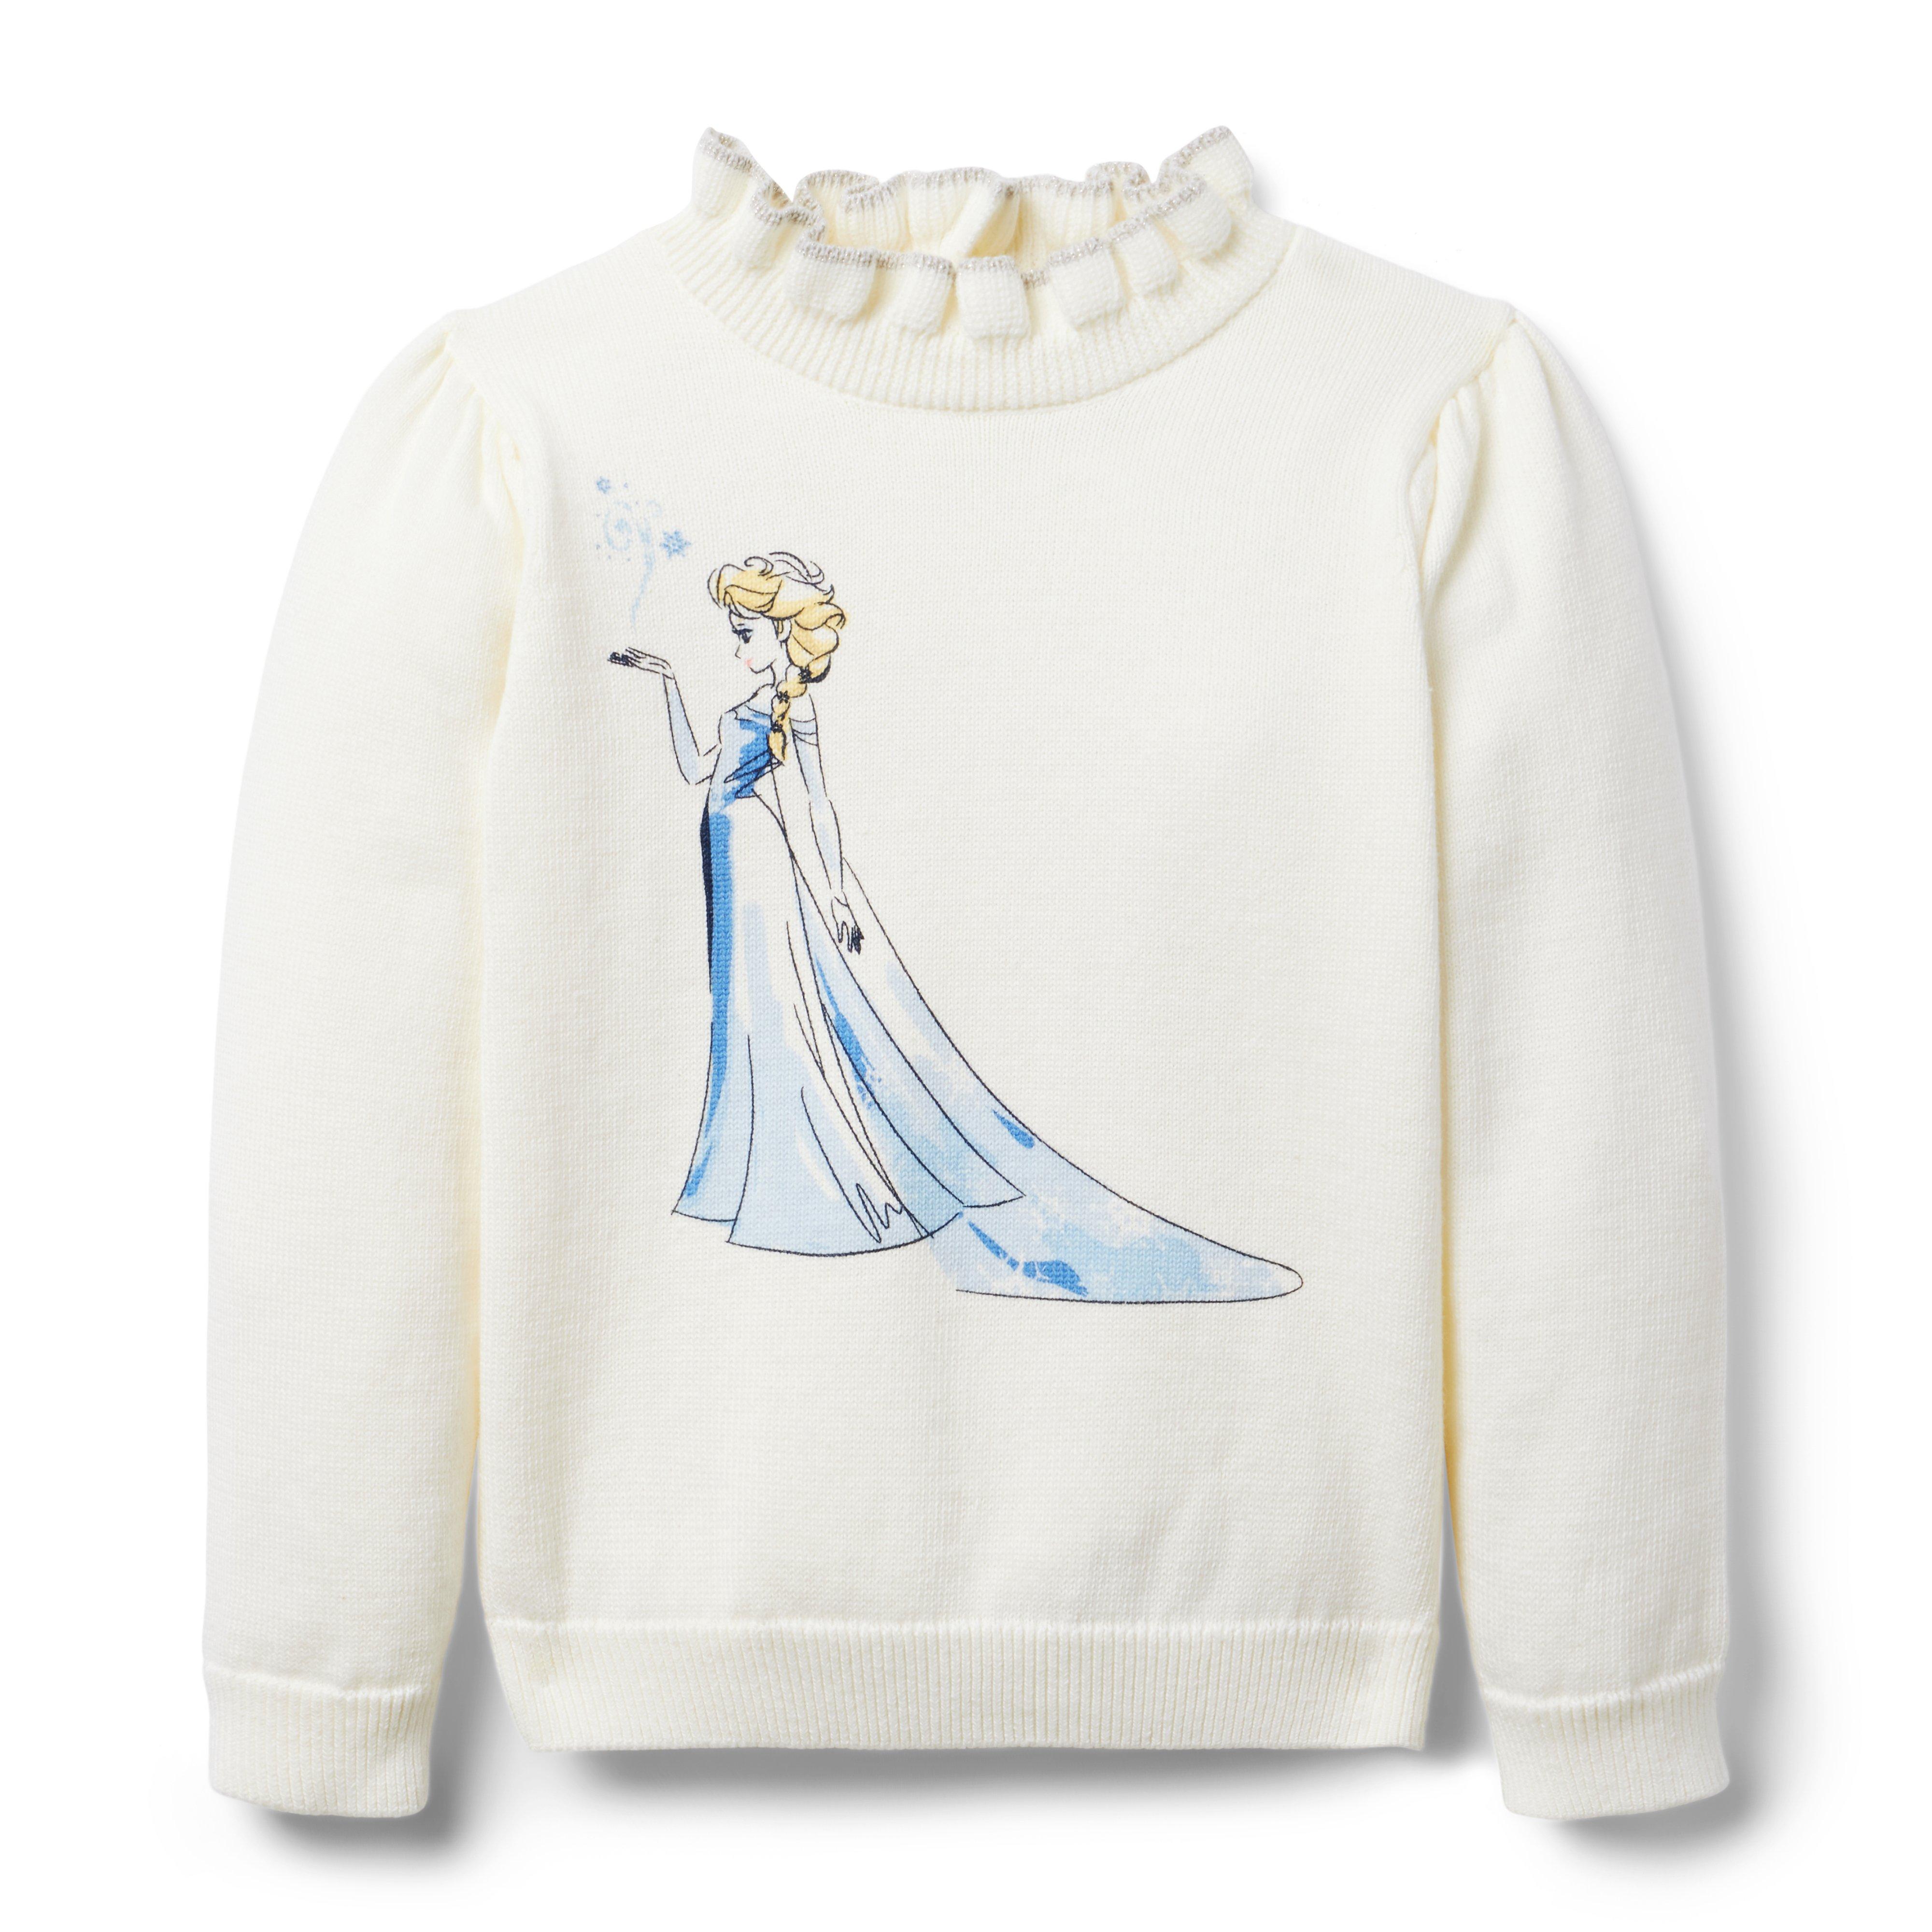 Disney Frozen Elsa Sweater